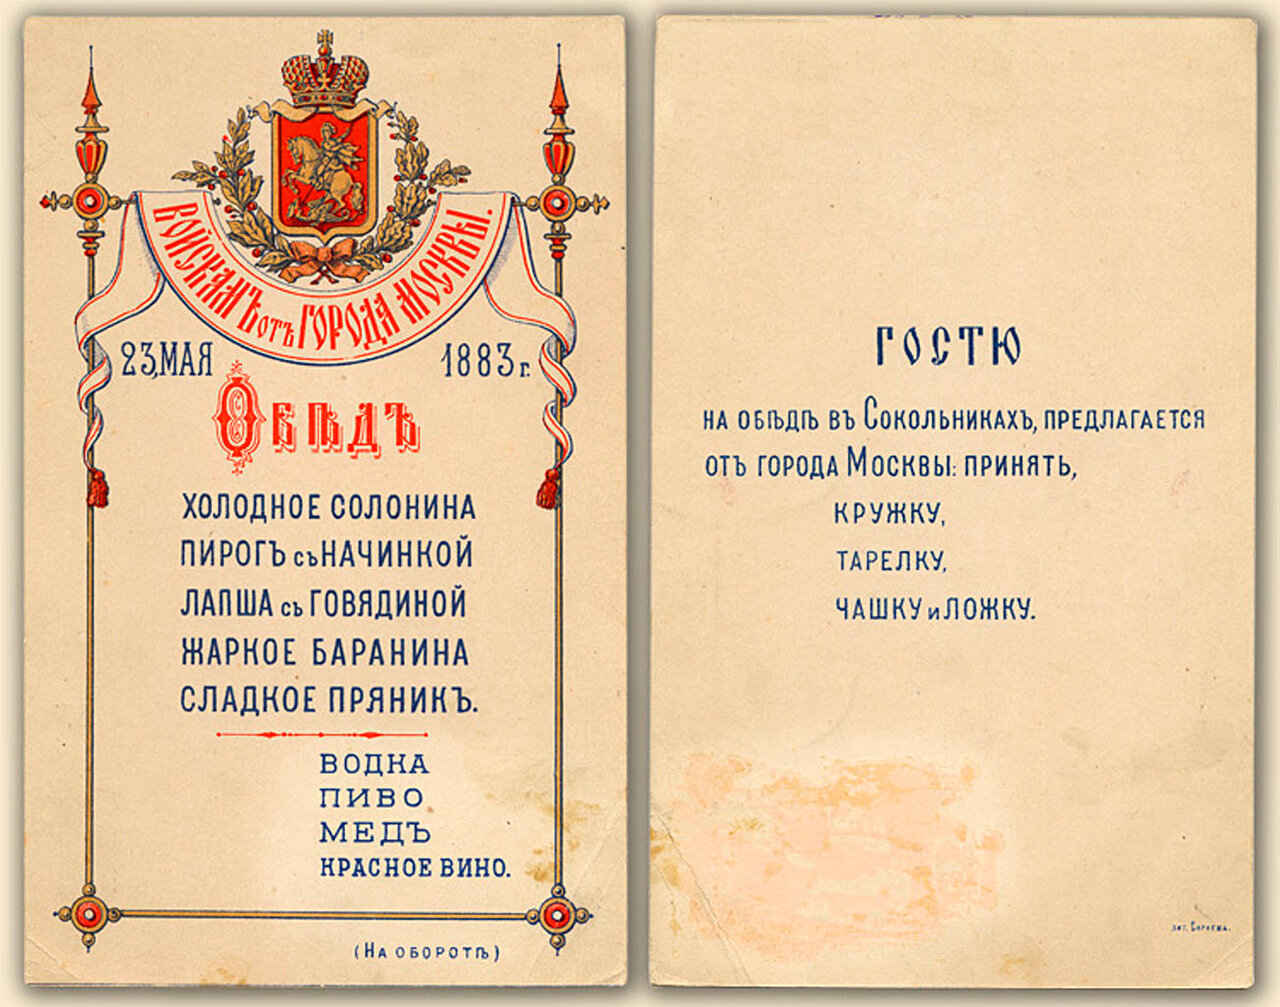 Меню обеда 23 мая 1883 года войскам от города Москвы в Сокольниках